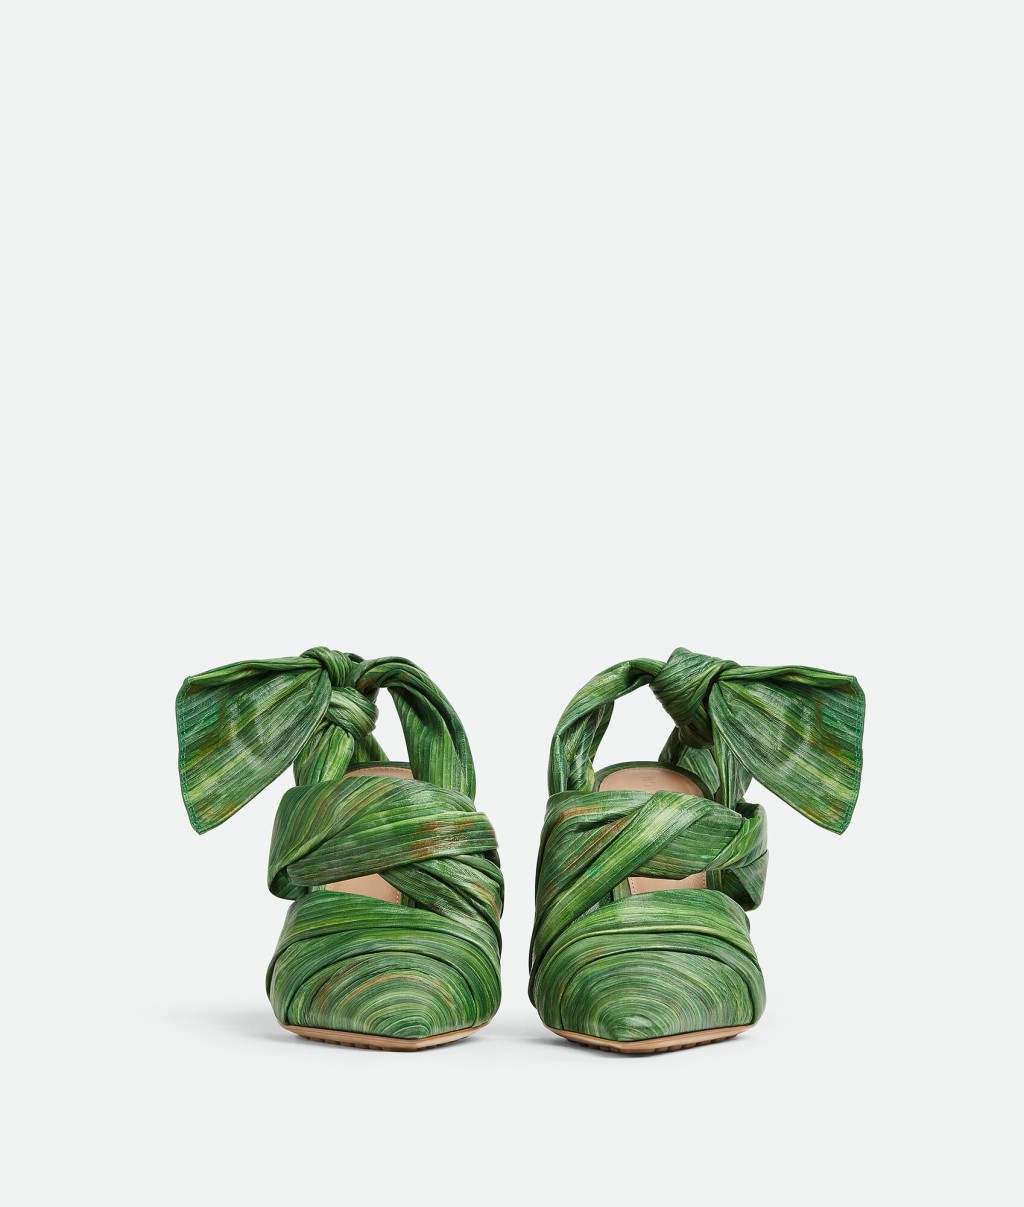 高海宁所穿的高踭鞋就是设计师以热带树叶作灵感，以热带树叶印花皮革制成的露跟高跟鞋。